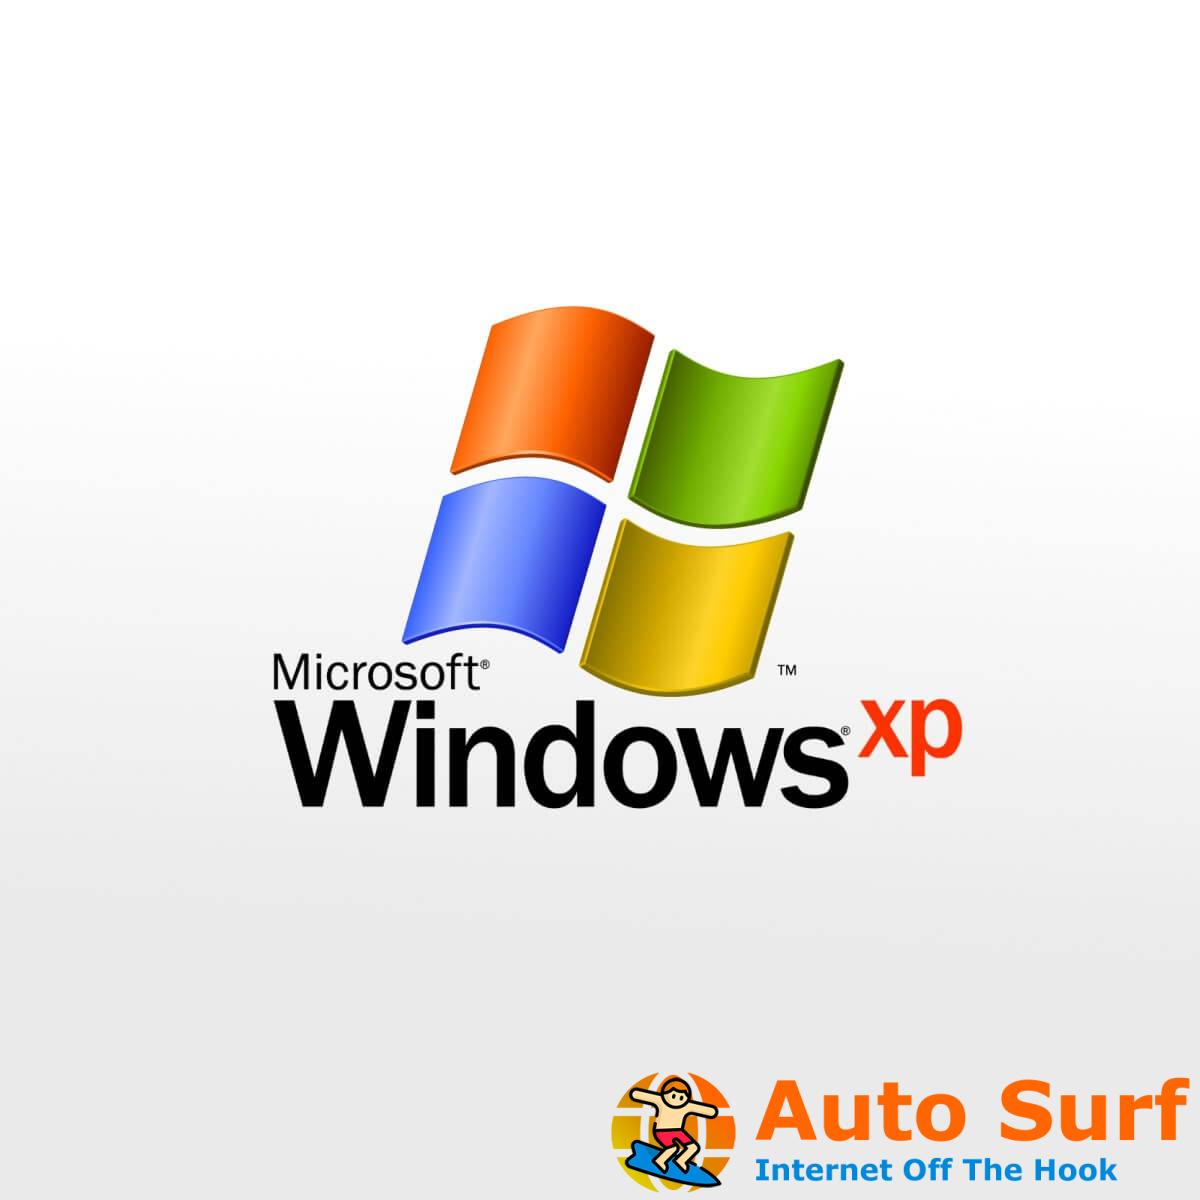 Windows XP debe estar activado antes de iniciar sesión